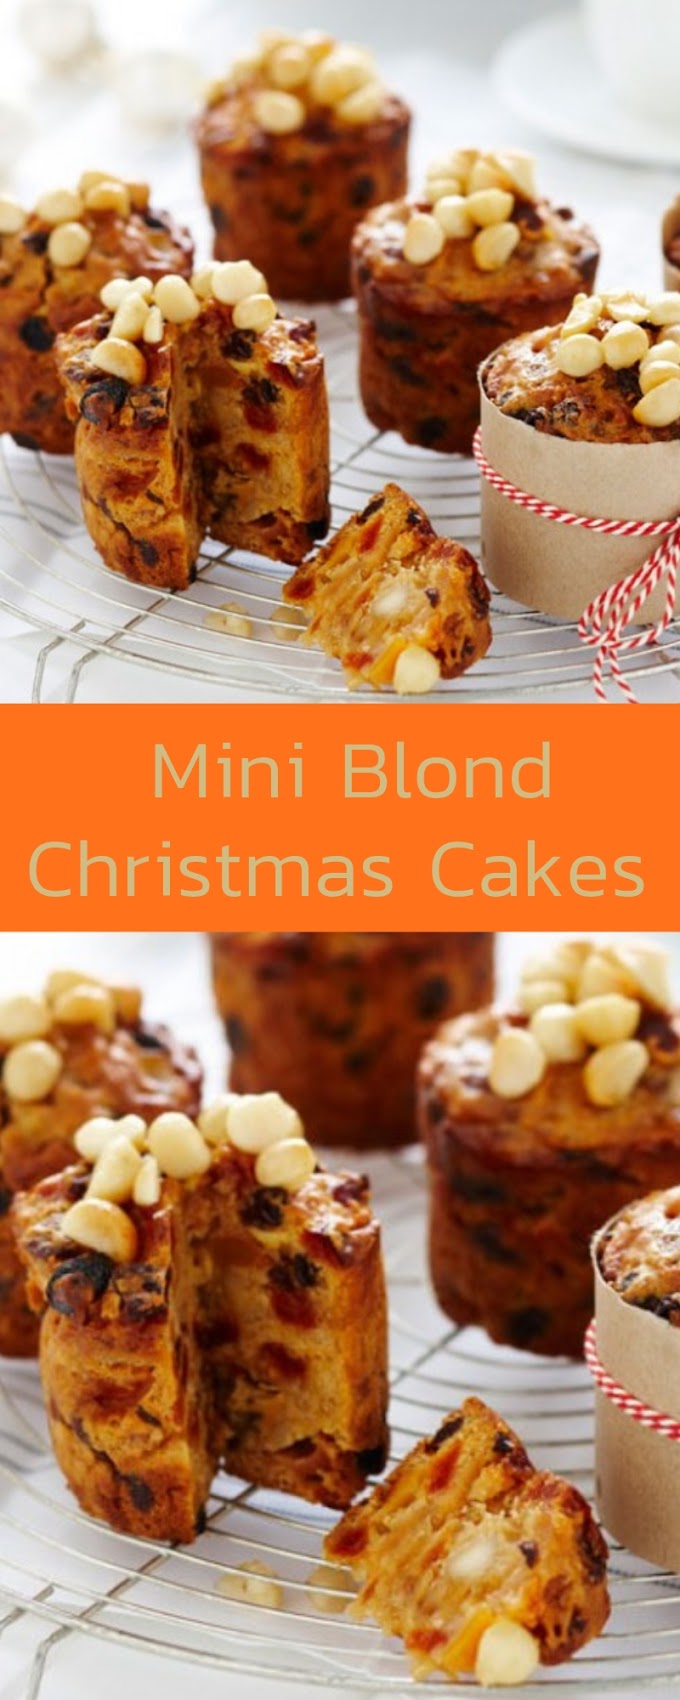  Mini Blond Christmas Cakes #christmas #cake